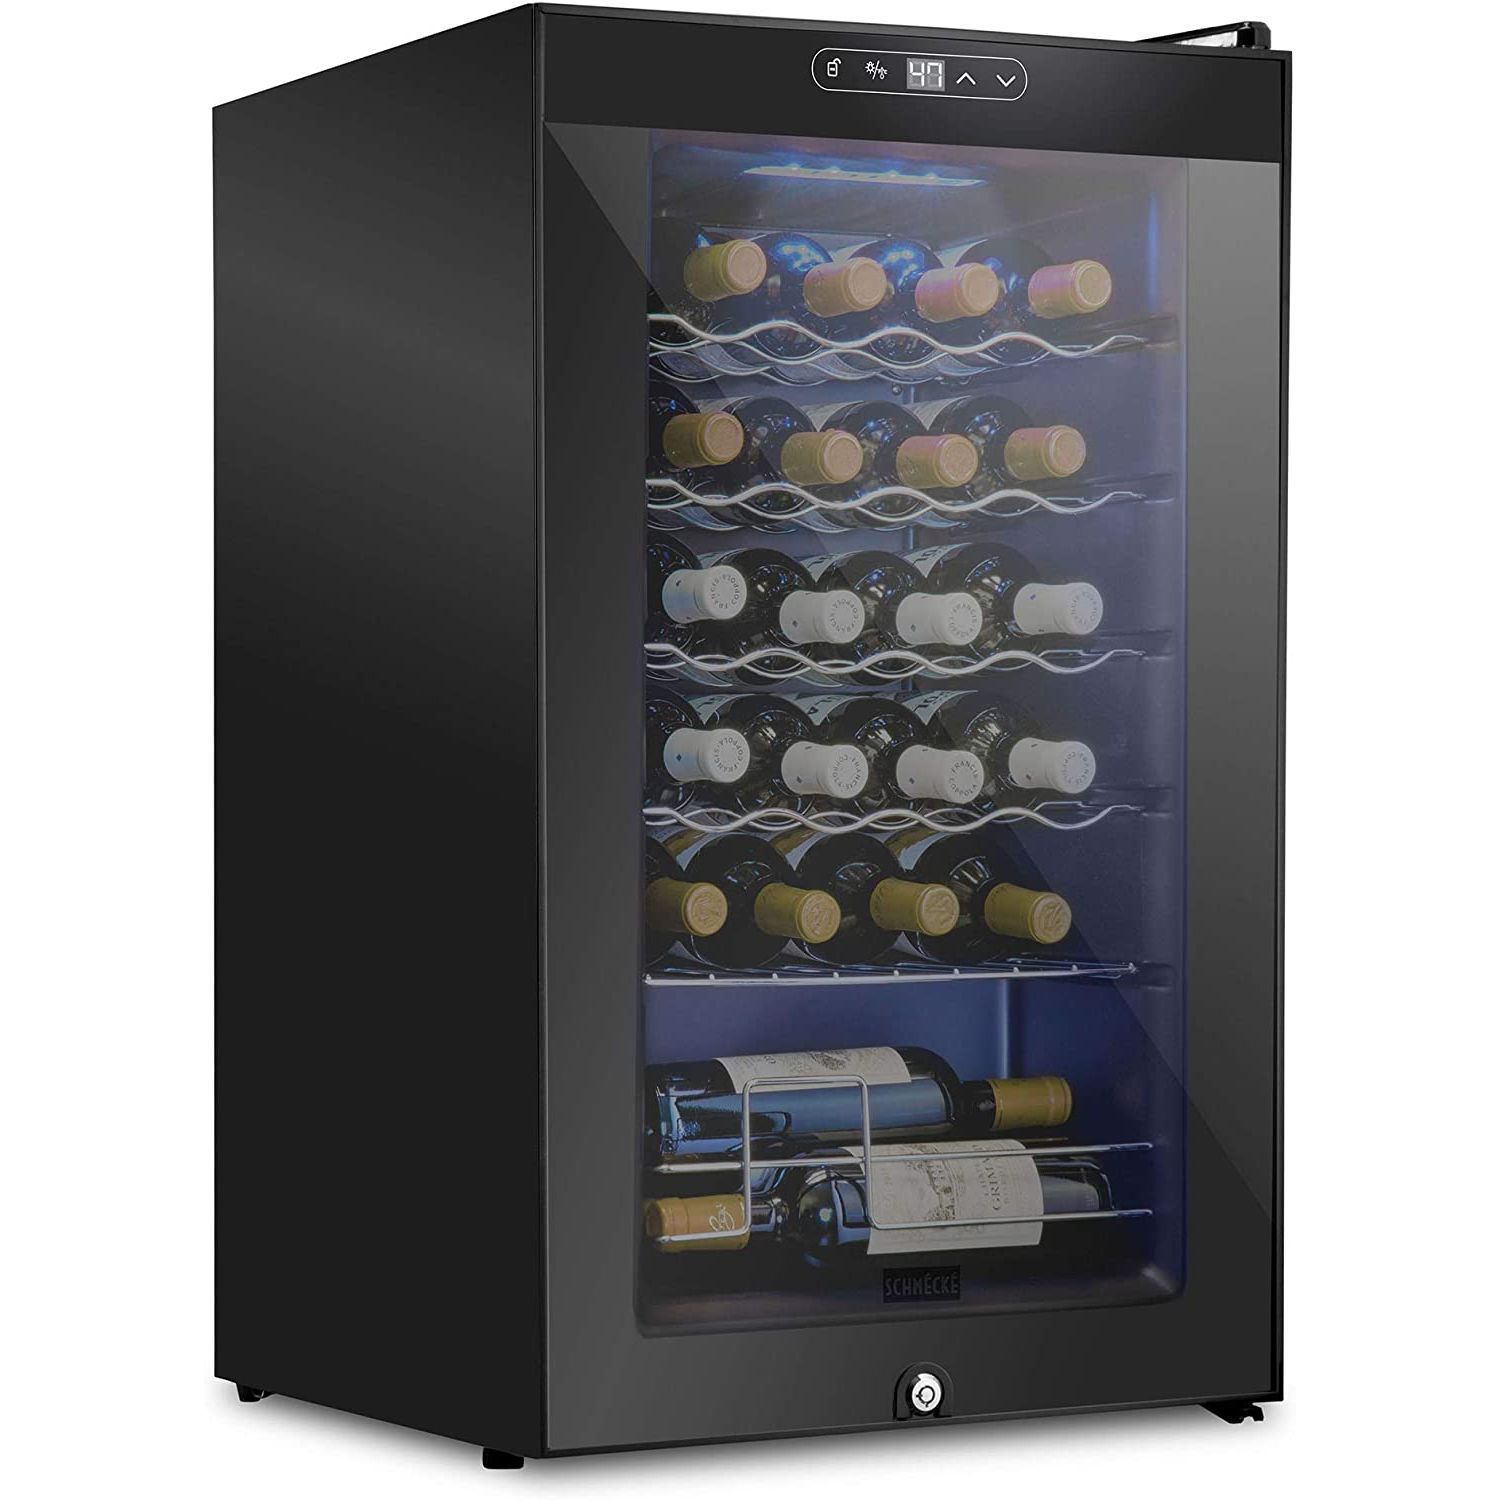 3P Experts Frig Leaf Refrigerator Mats VALUE PACK - 10PK